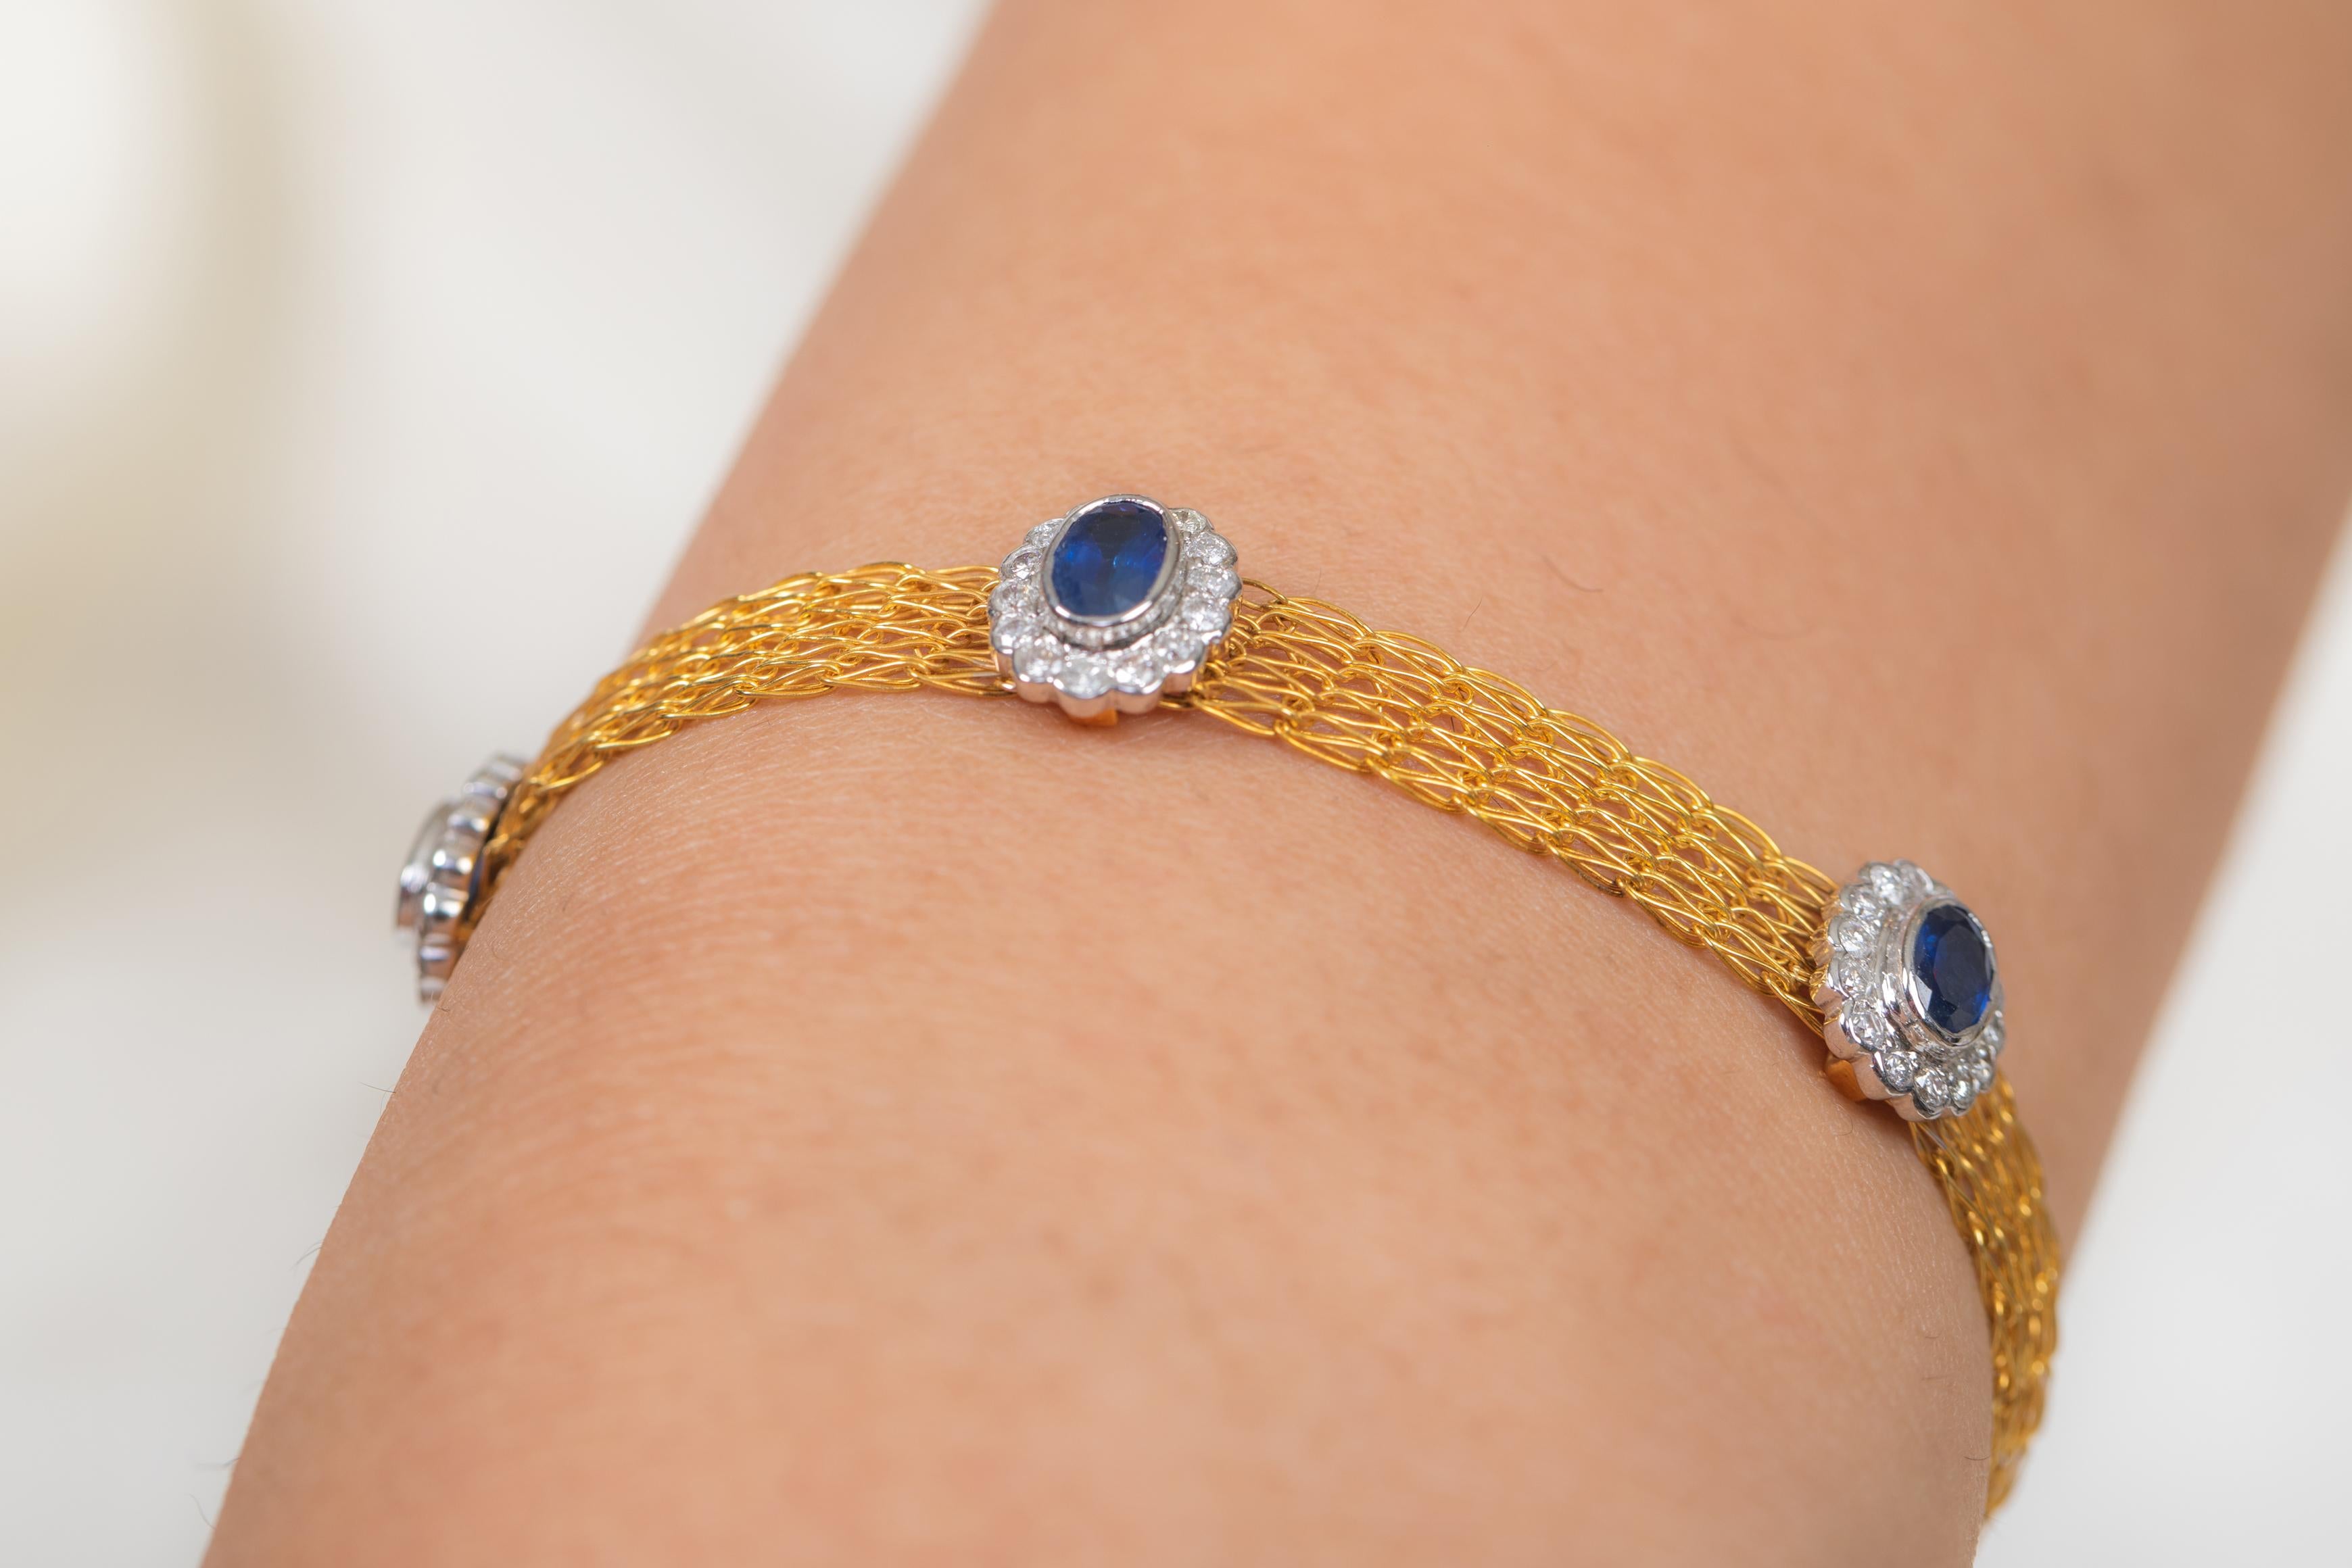 Le port de charmes peut avoir commencé comme une forme d'amulette ou de talisman pour éloigner les mauvais esprits ou la malchance.
Ce bracelet en saphir bleu présente une pierre précieuse de taille ovale et des diamants en or 18 carats. Un bijou